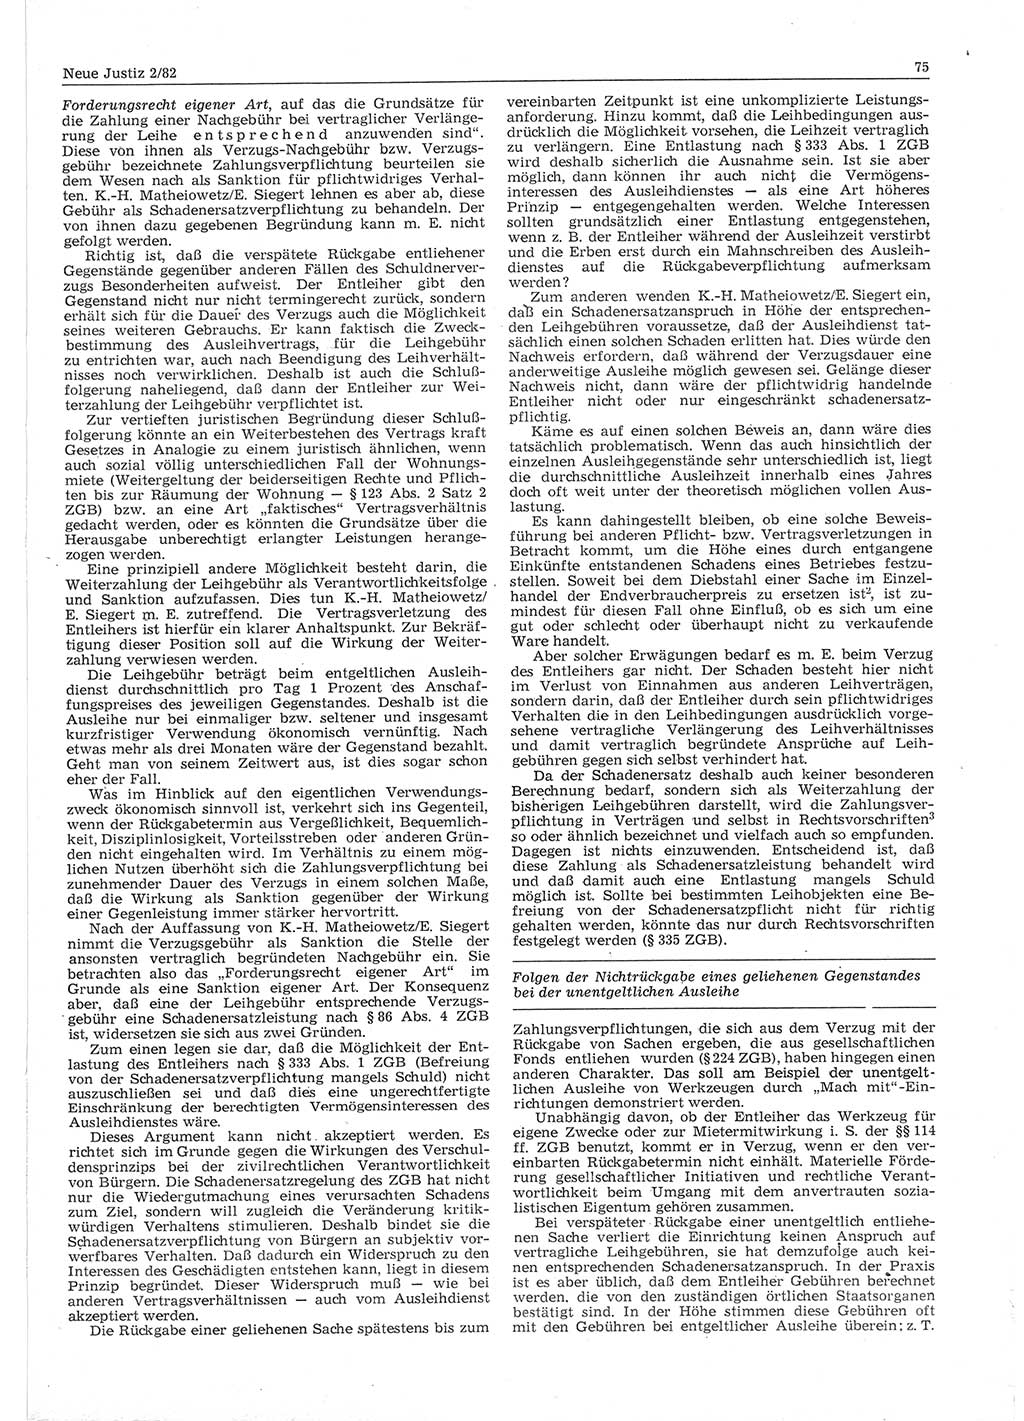 Neue Justiz (NJ), Zeitschrift für sozialistisches Recht und Gesetzlichkeit [Deutsche Demokratische Republik (DDR)], 36. Jahrgang 1982, Seite 75 (NJ DDR 1982, S. 75)